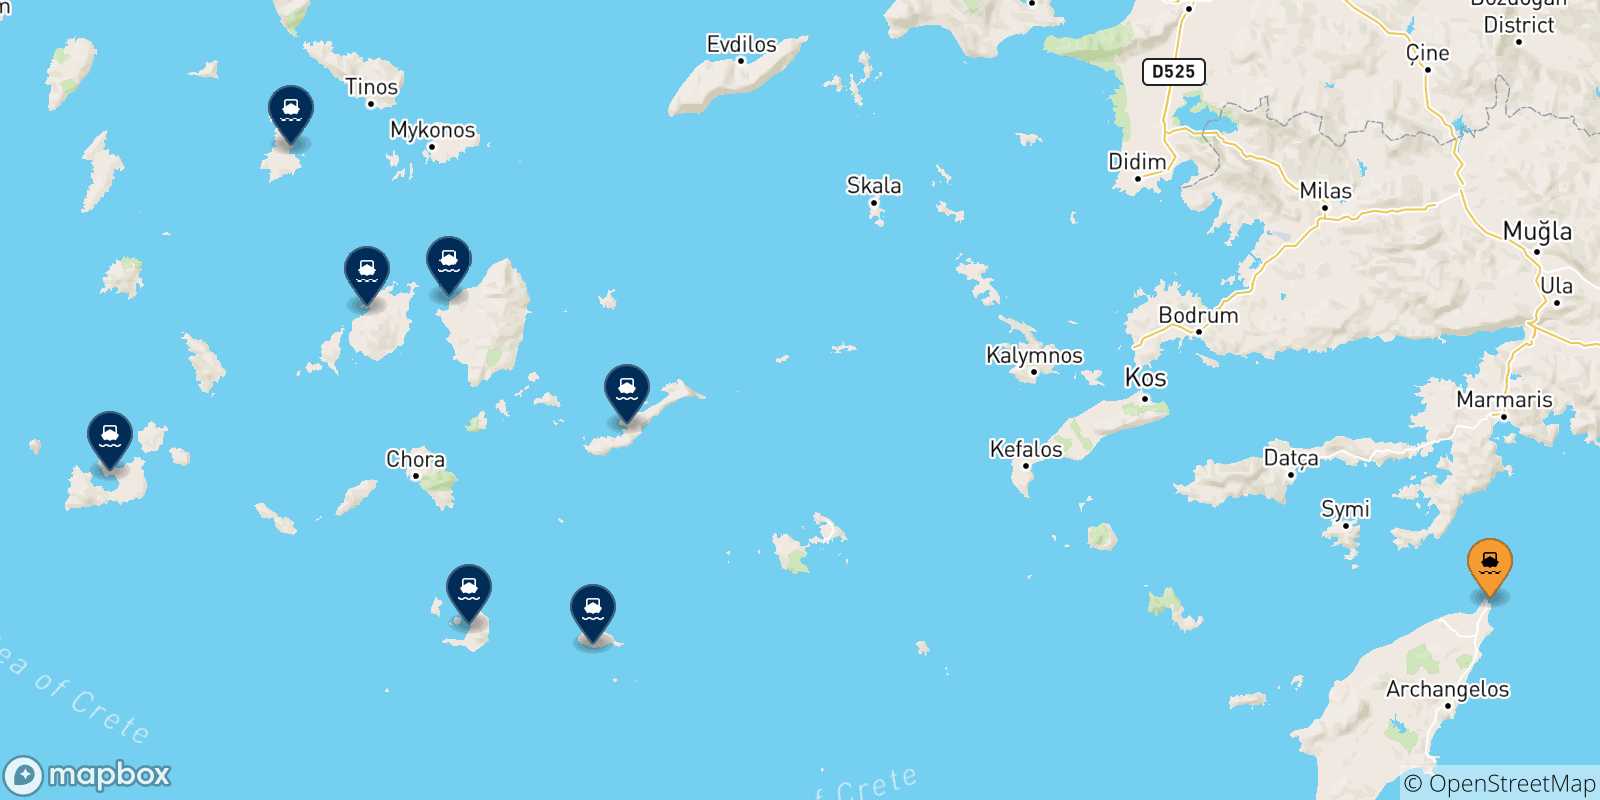 Mappa delle possibili rotte tra Rodi e le Isole Cicladi